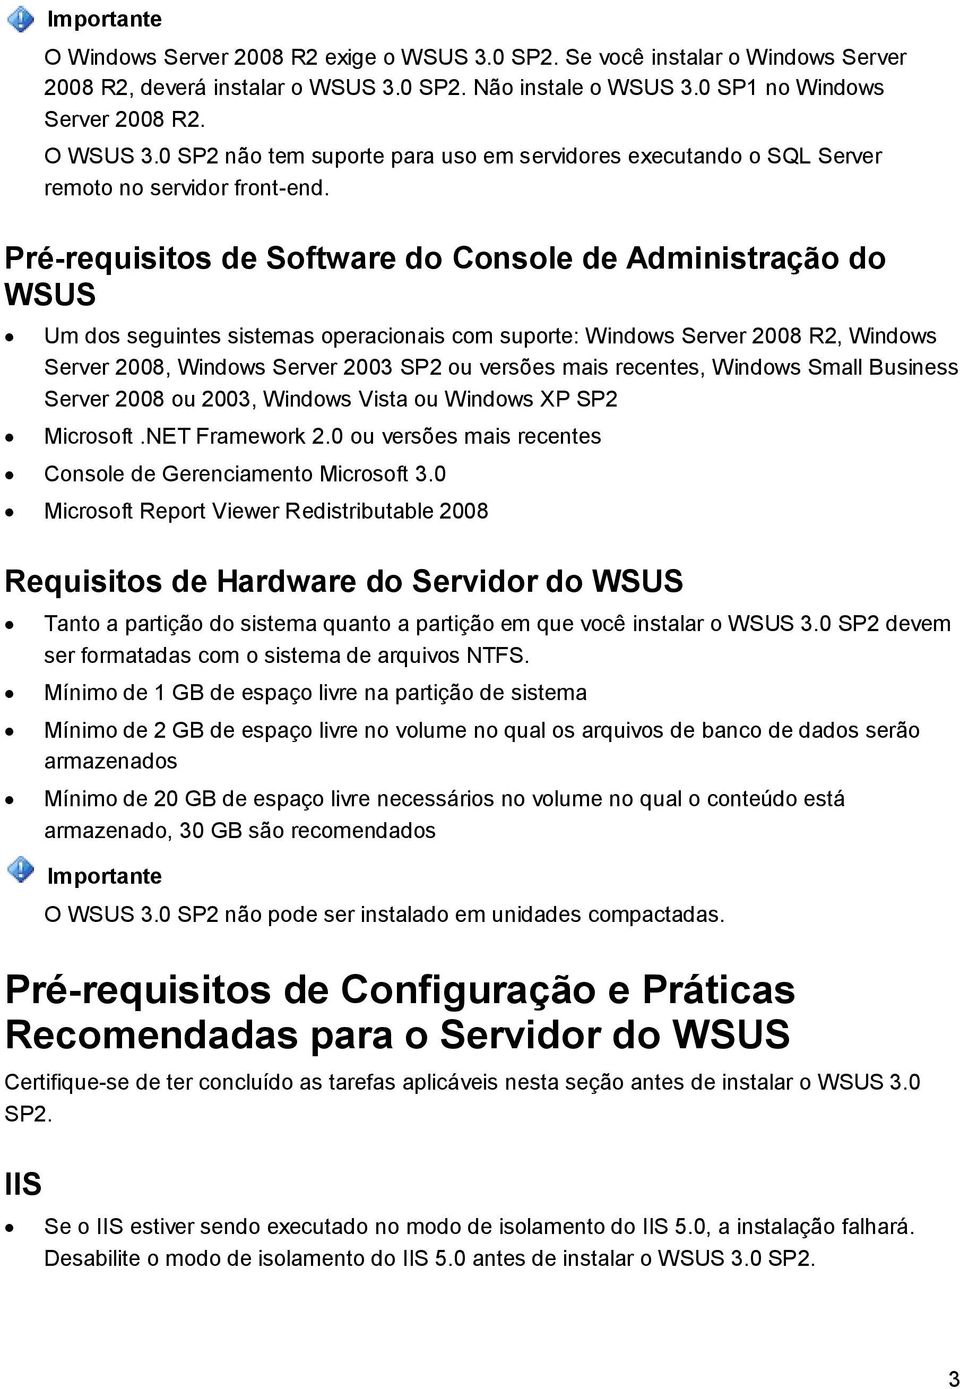 Pré-requisitos de Software do Console de Administração do WSUS Um dos seguintes sistemas operacionais com suporte: Windows Server 2008 R2, Windows Server 2008, Windows Server 2003 SP2 ou versões mais